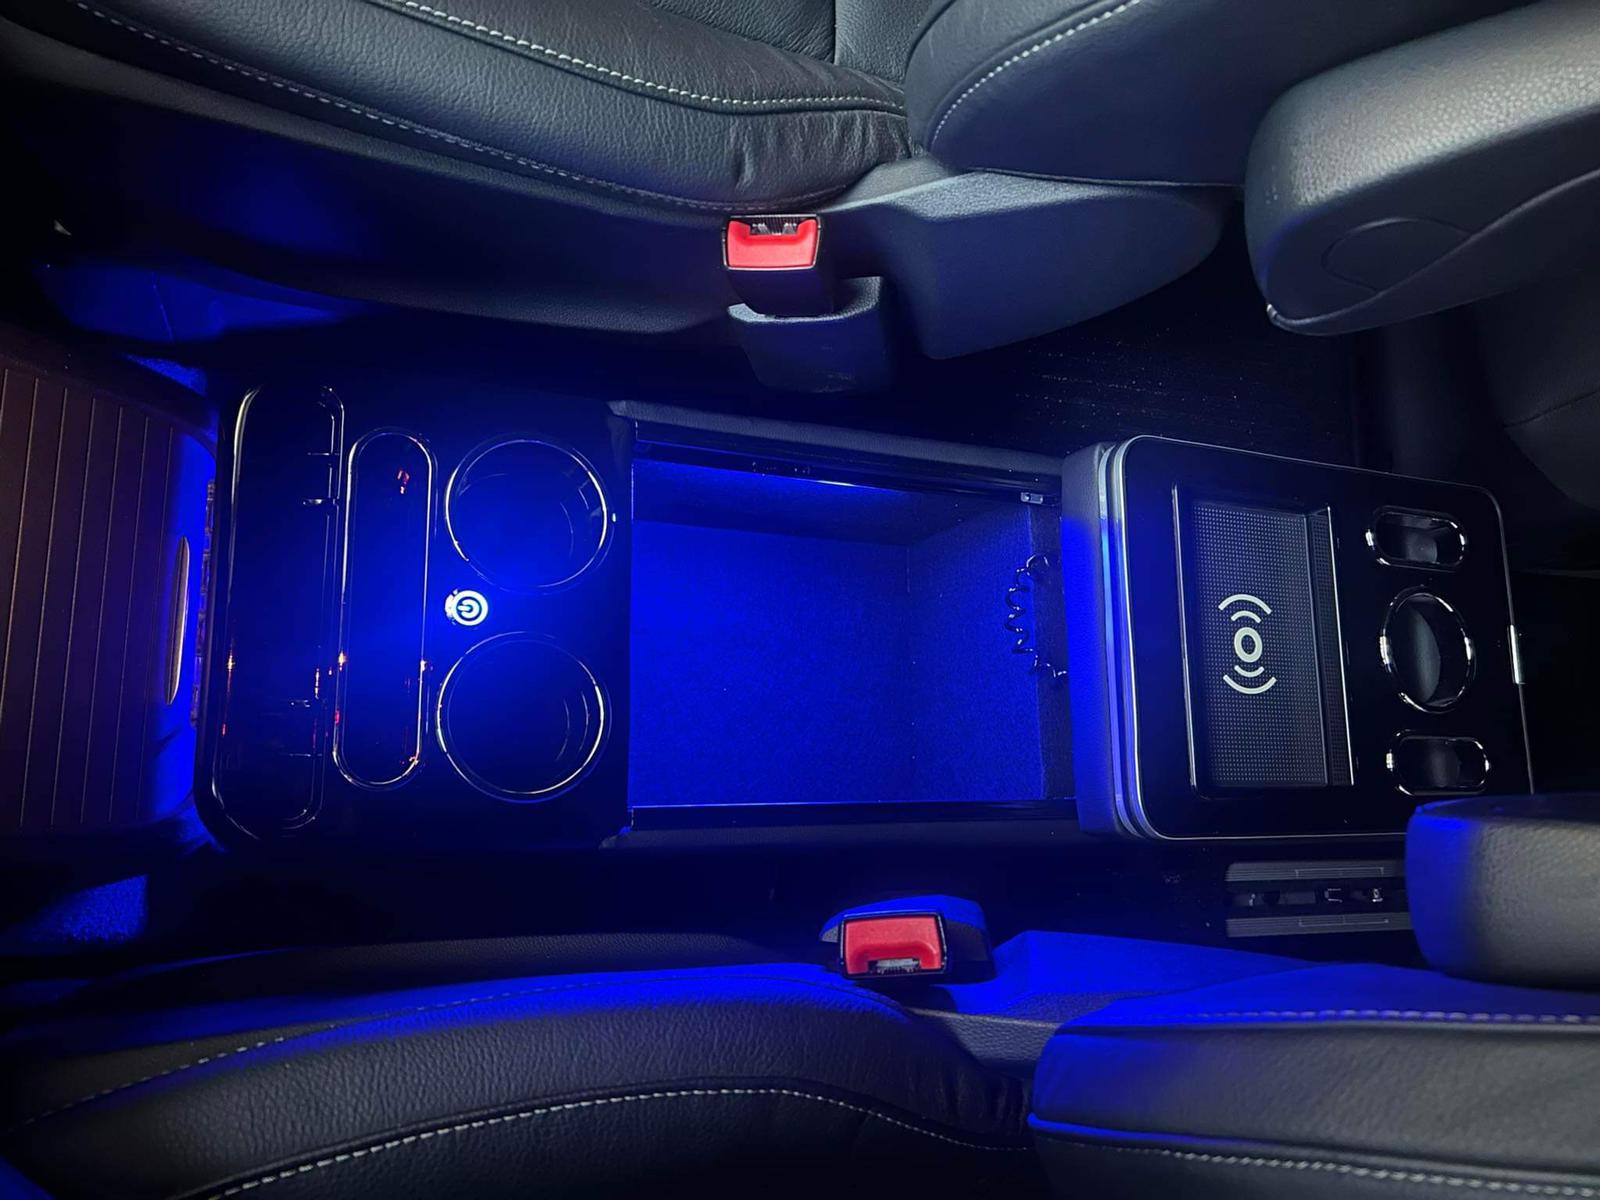 Upgrade Staufach Mittelkonsole Ablage für alle Mercedes Benz Vito / V-Klasse  W447 14-23 mit LED Beleuchtung, USB und Induktions-Ladestation